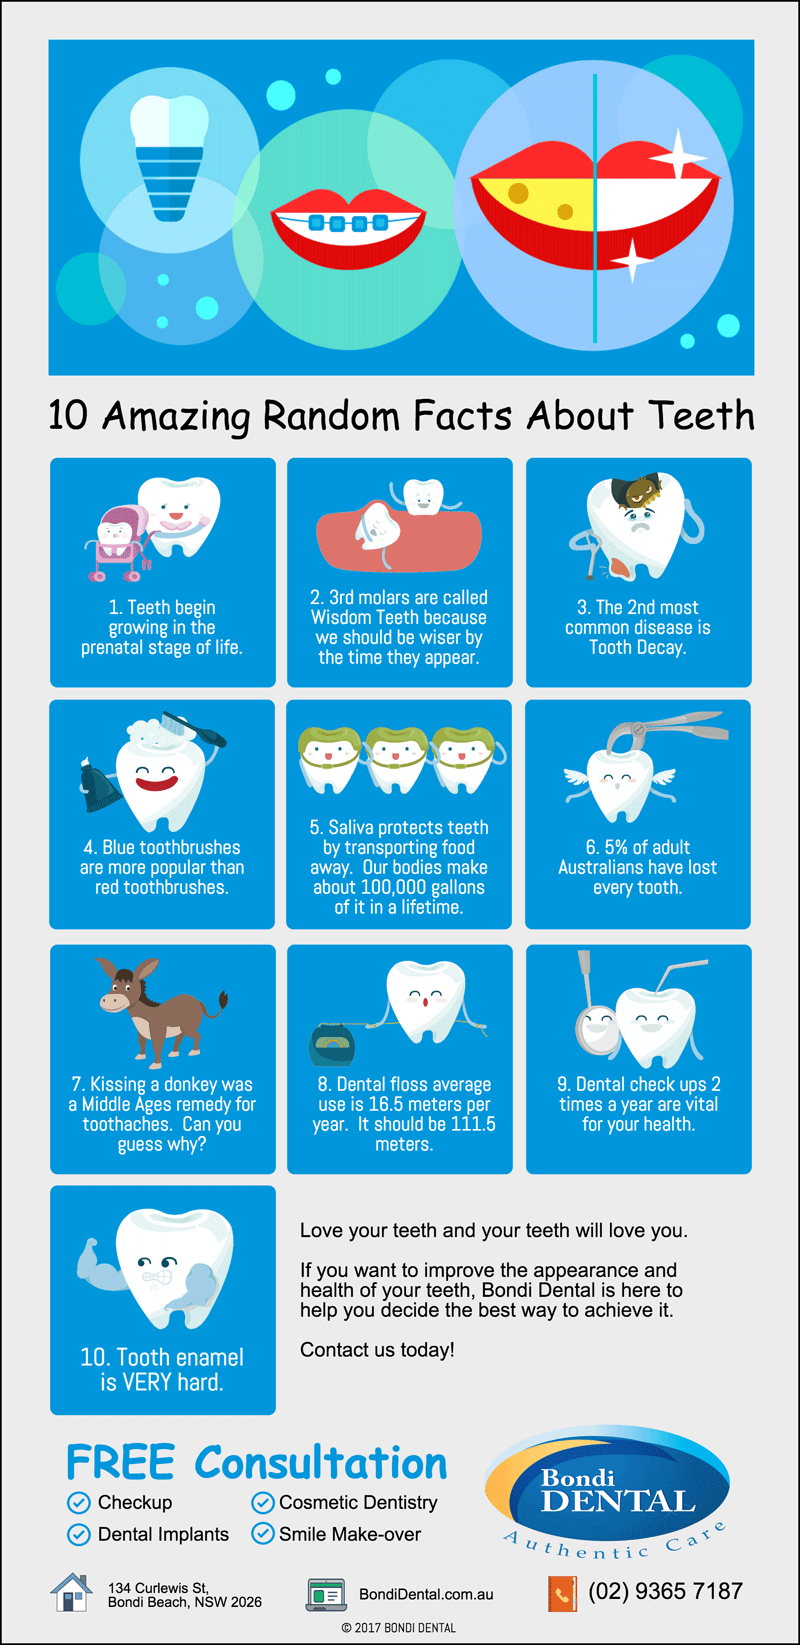 Fun Facts About Wisdom Teeth